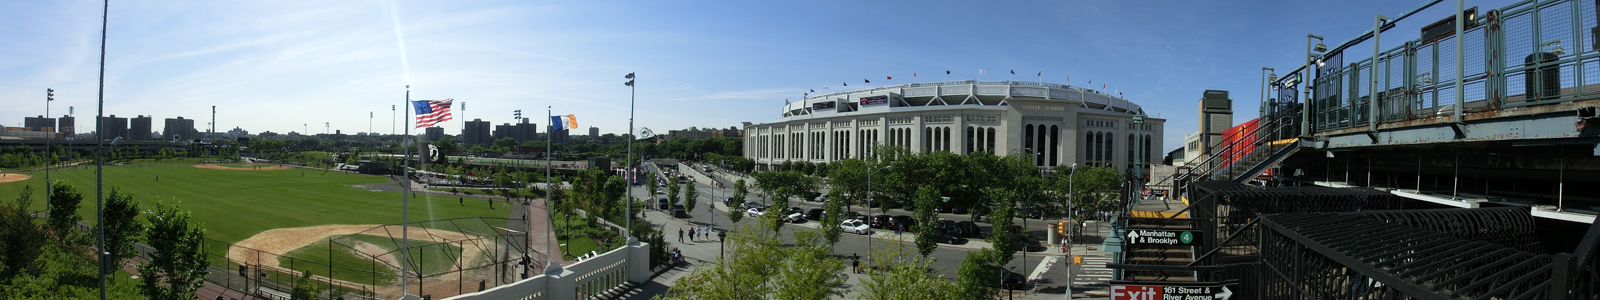 Panorama: New York Yankees Stadium mit der Subway-Station und einem Baseball-Feld